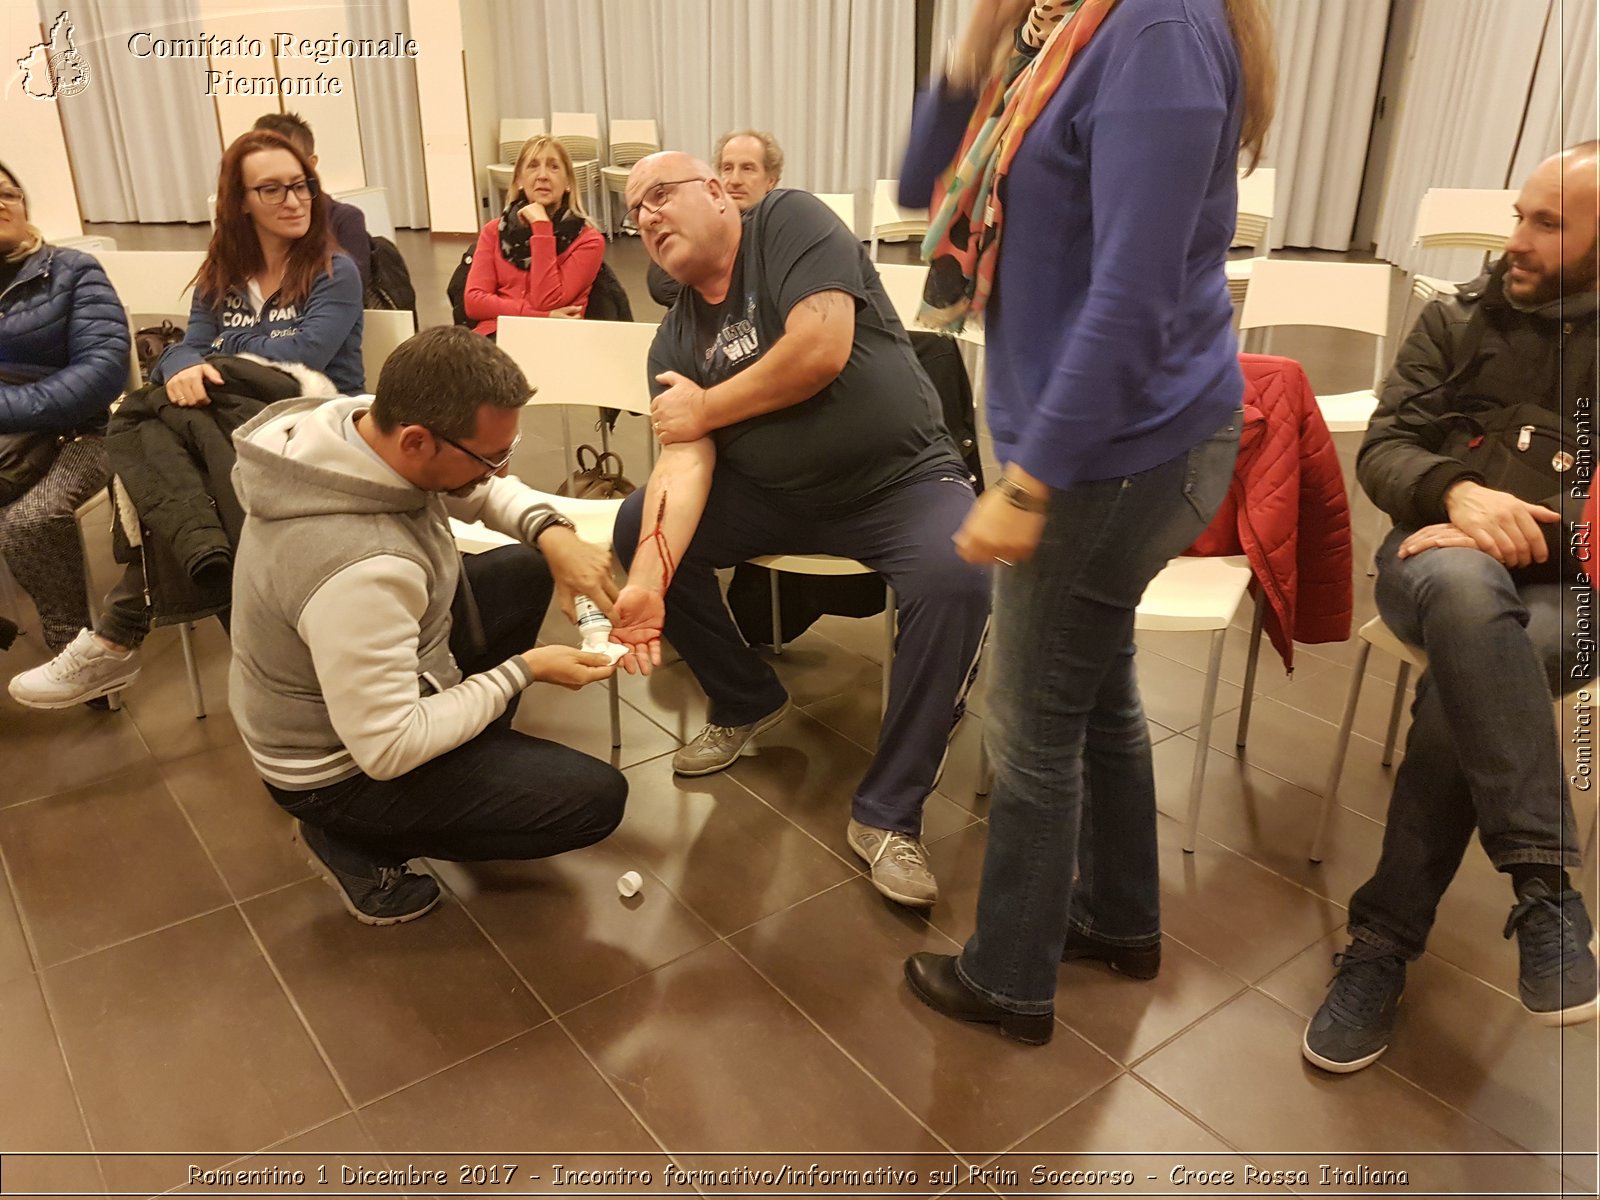 Romentino 1 Dicembre 2017 - Incontro formativo/informativo sul Primo Soccorso - Croce Rossa Italiana- Comitato Regionale del Piemonte